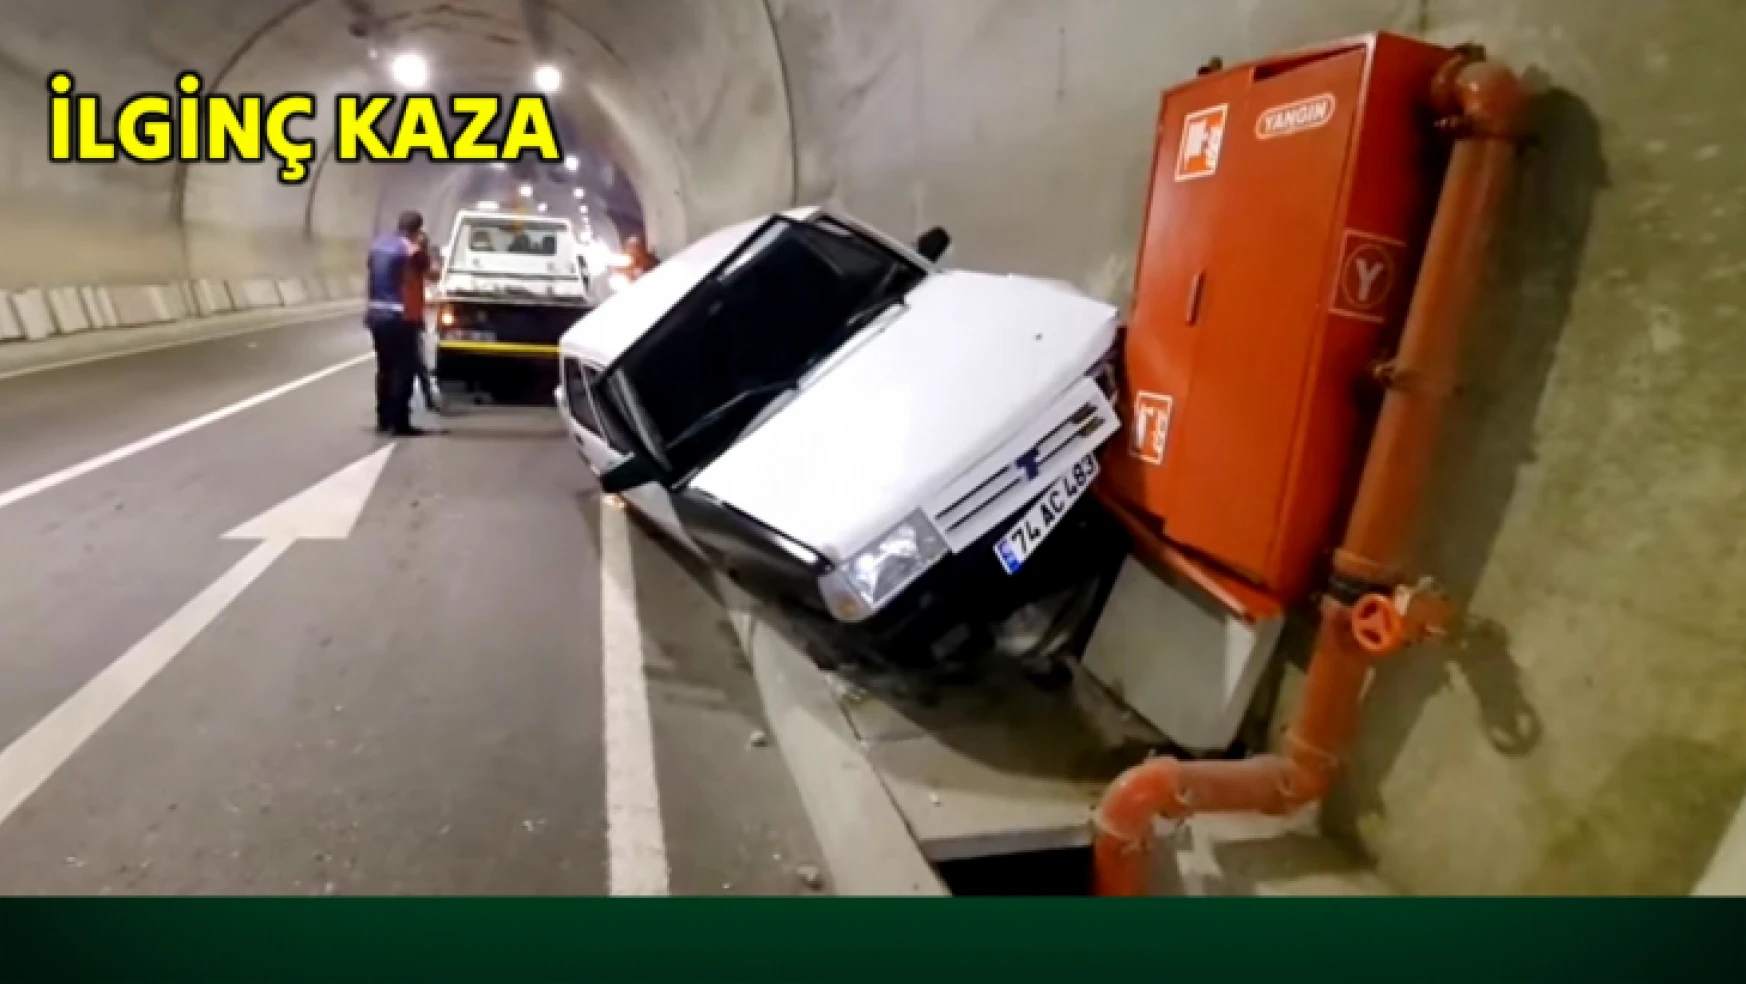 Tünel içinde ilginç kaza